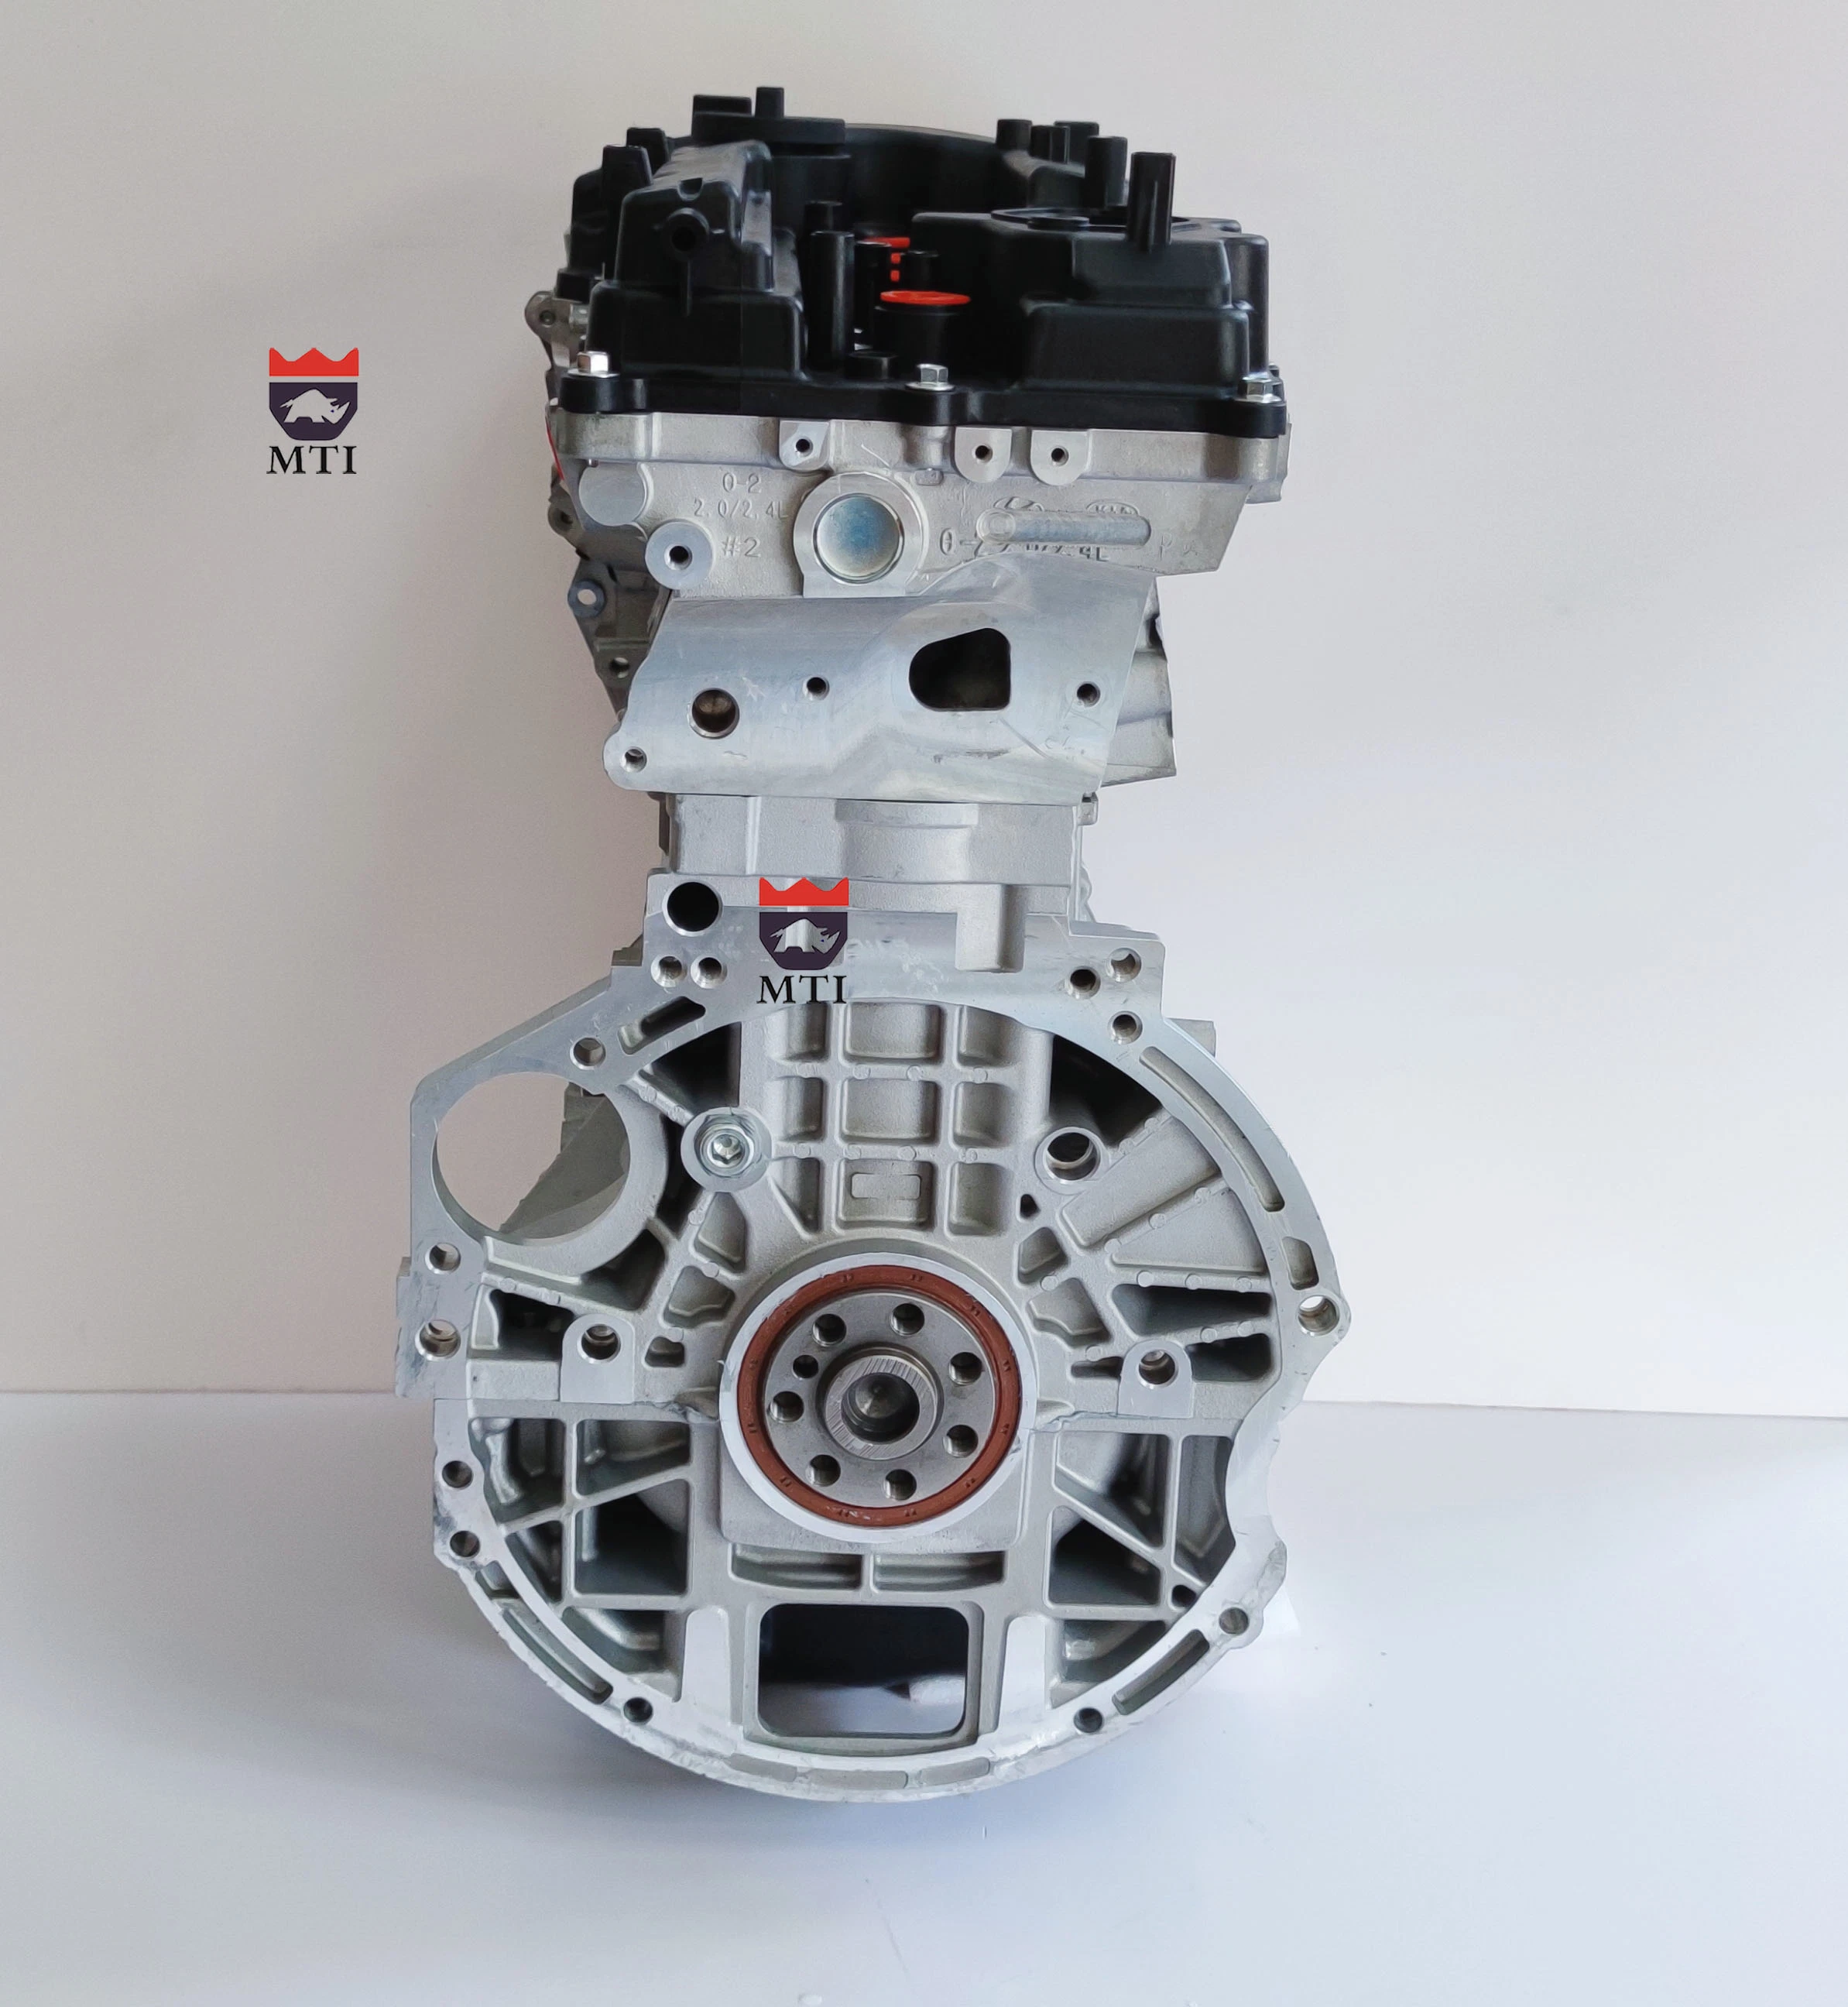 Nuevo conjunto de motor G4kj 2,4L para Hyundai KIA Optima Motor de Sonata Auto